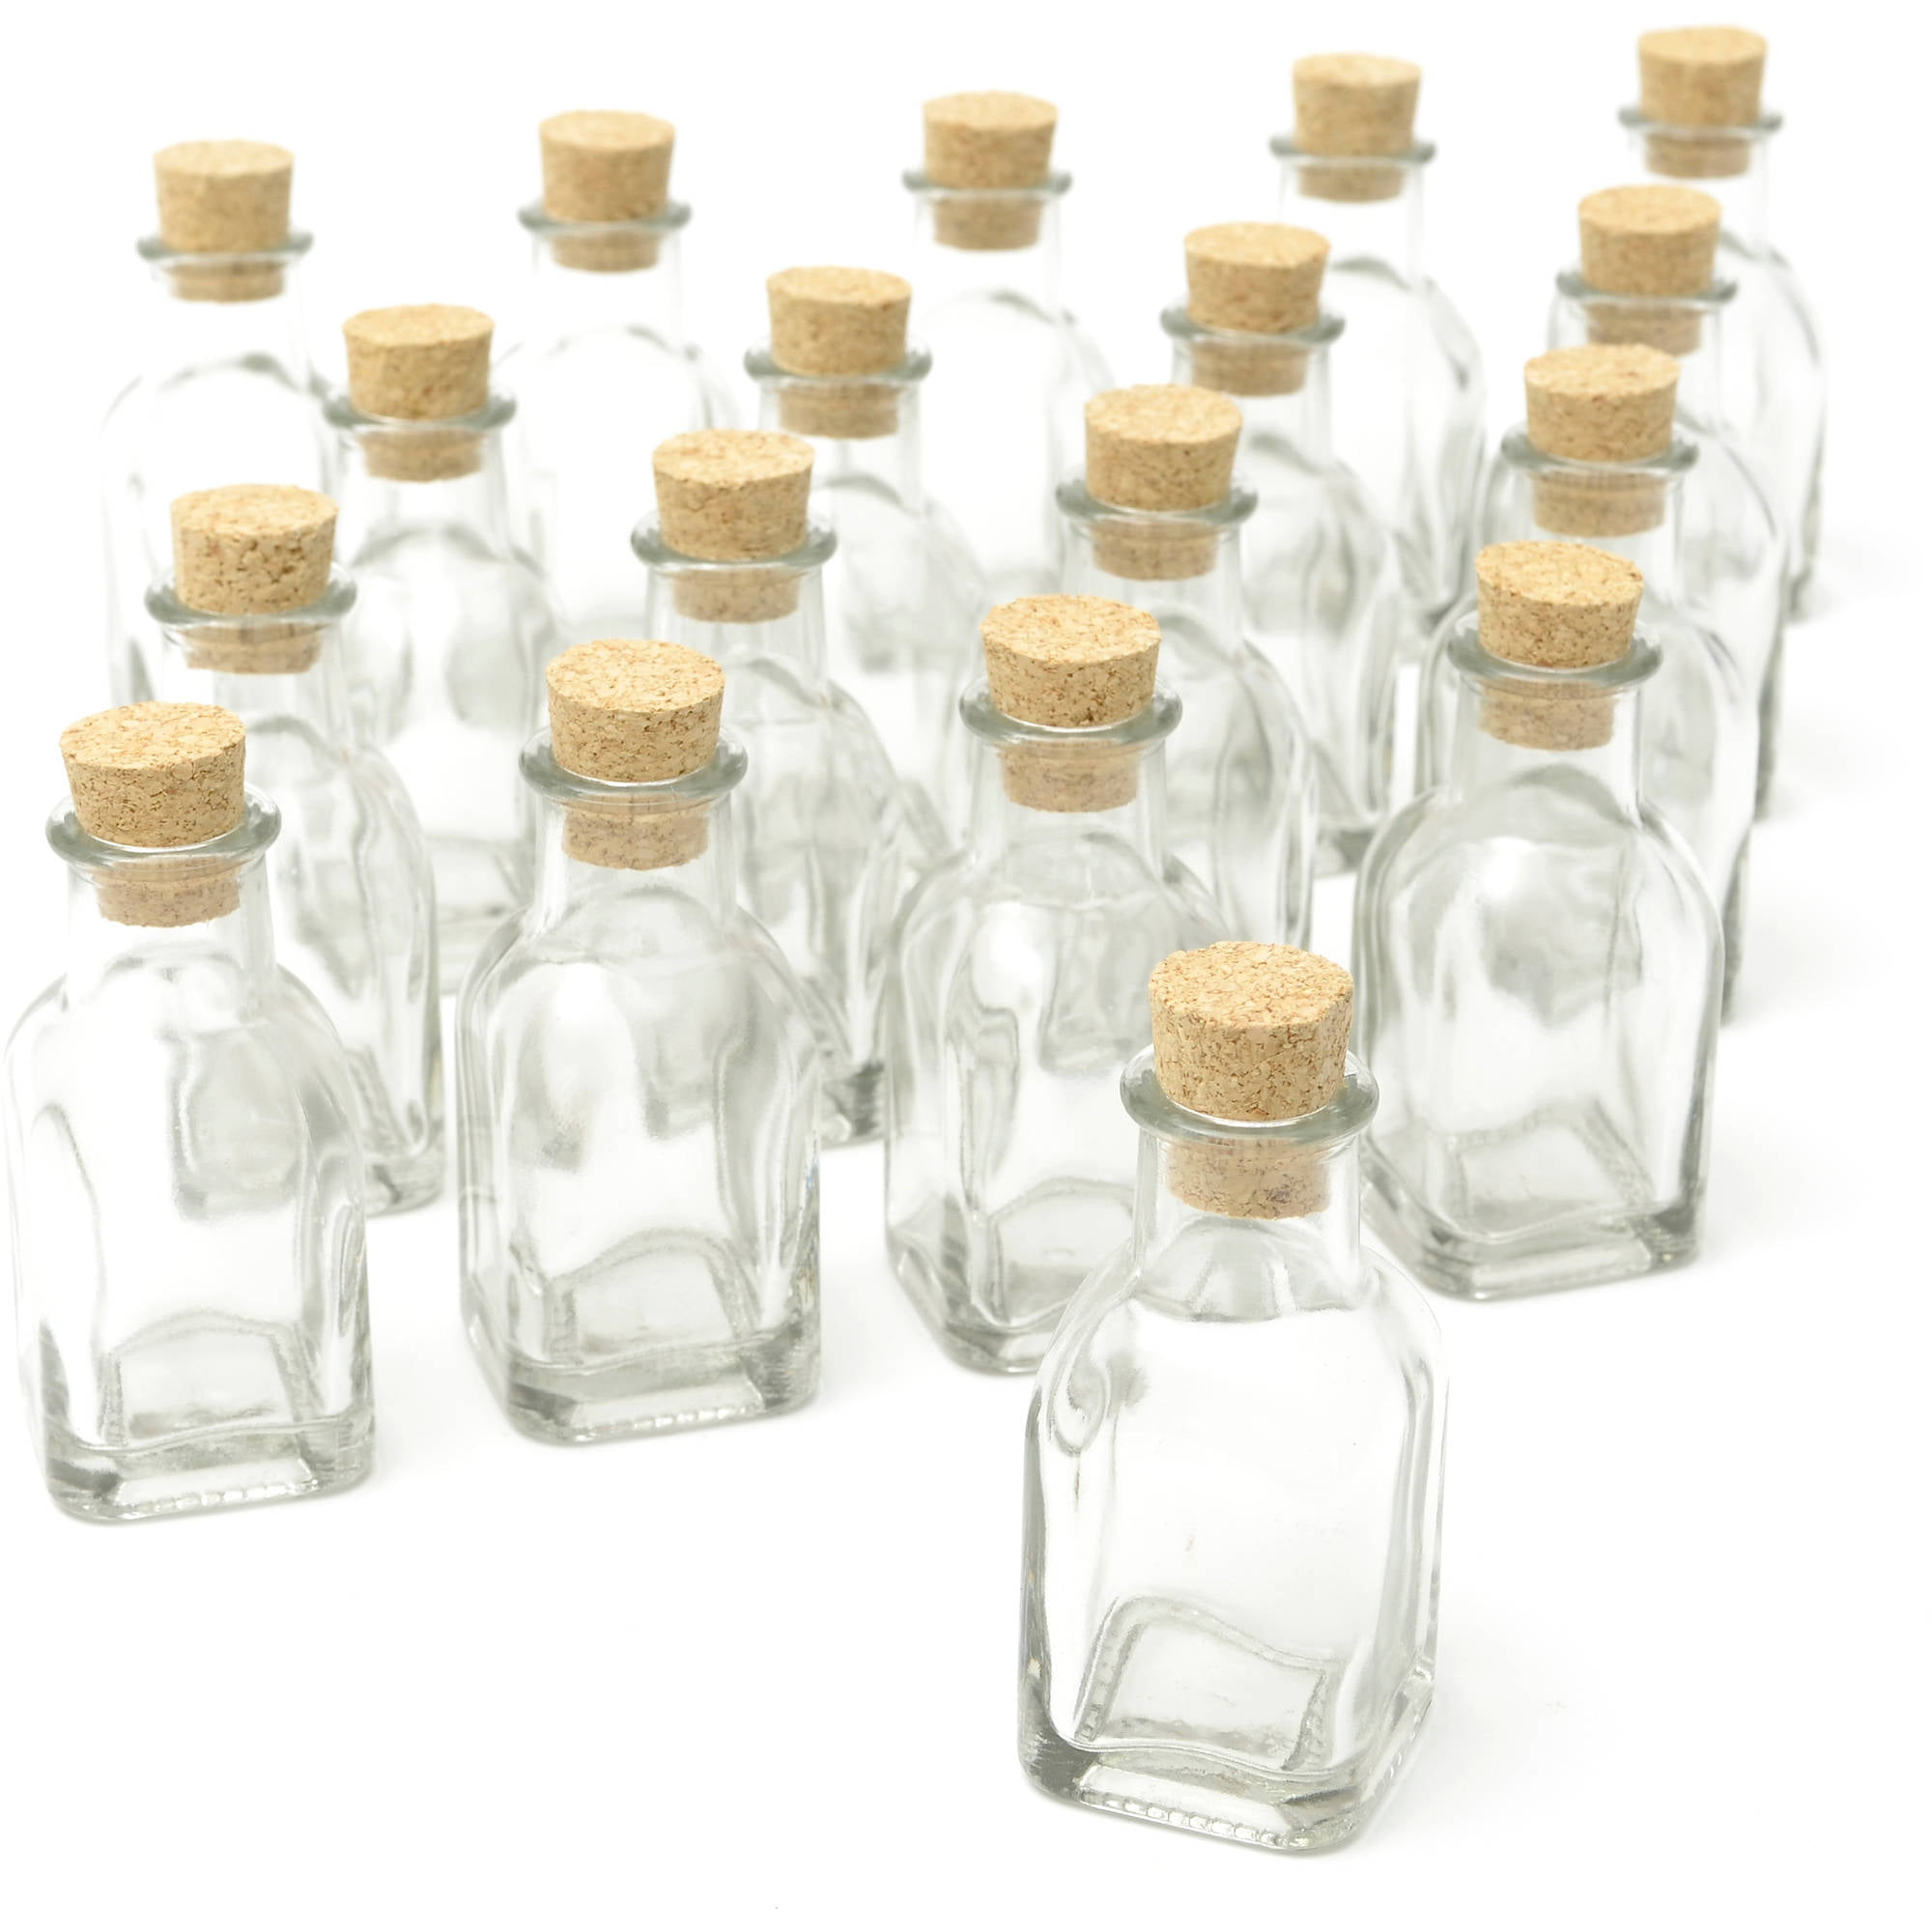 Vintage Glass Bottles w/ Corks Set 10 Designs 5" Tall BLUE wedding favor NEW 